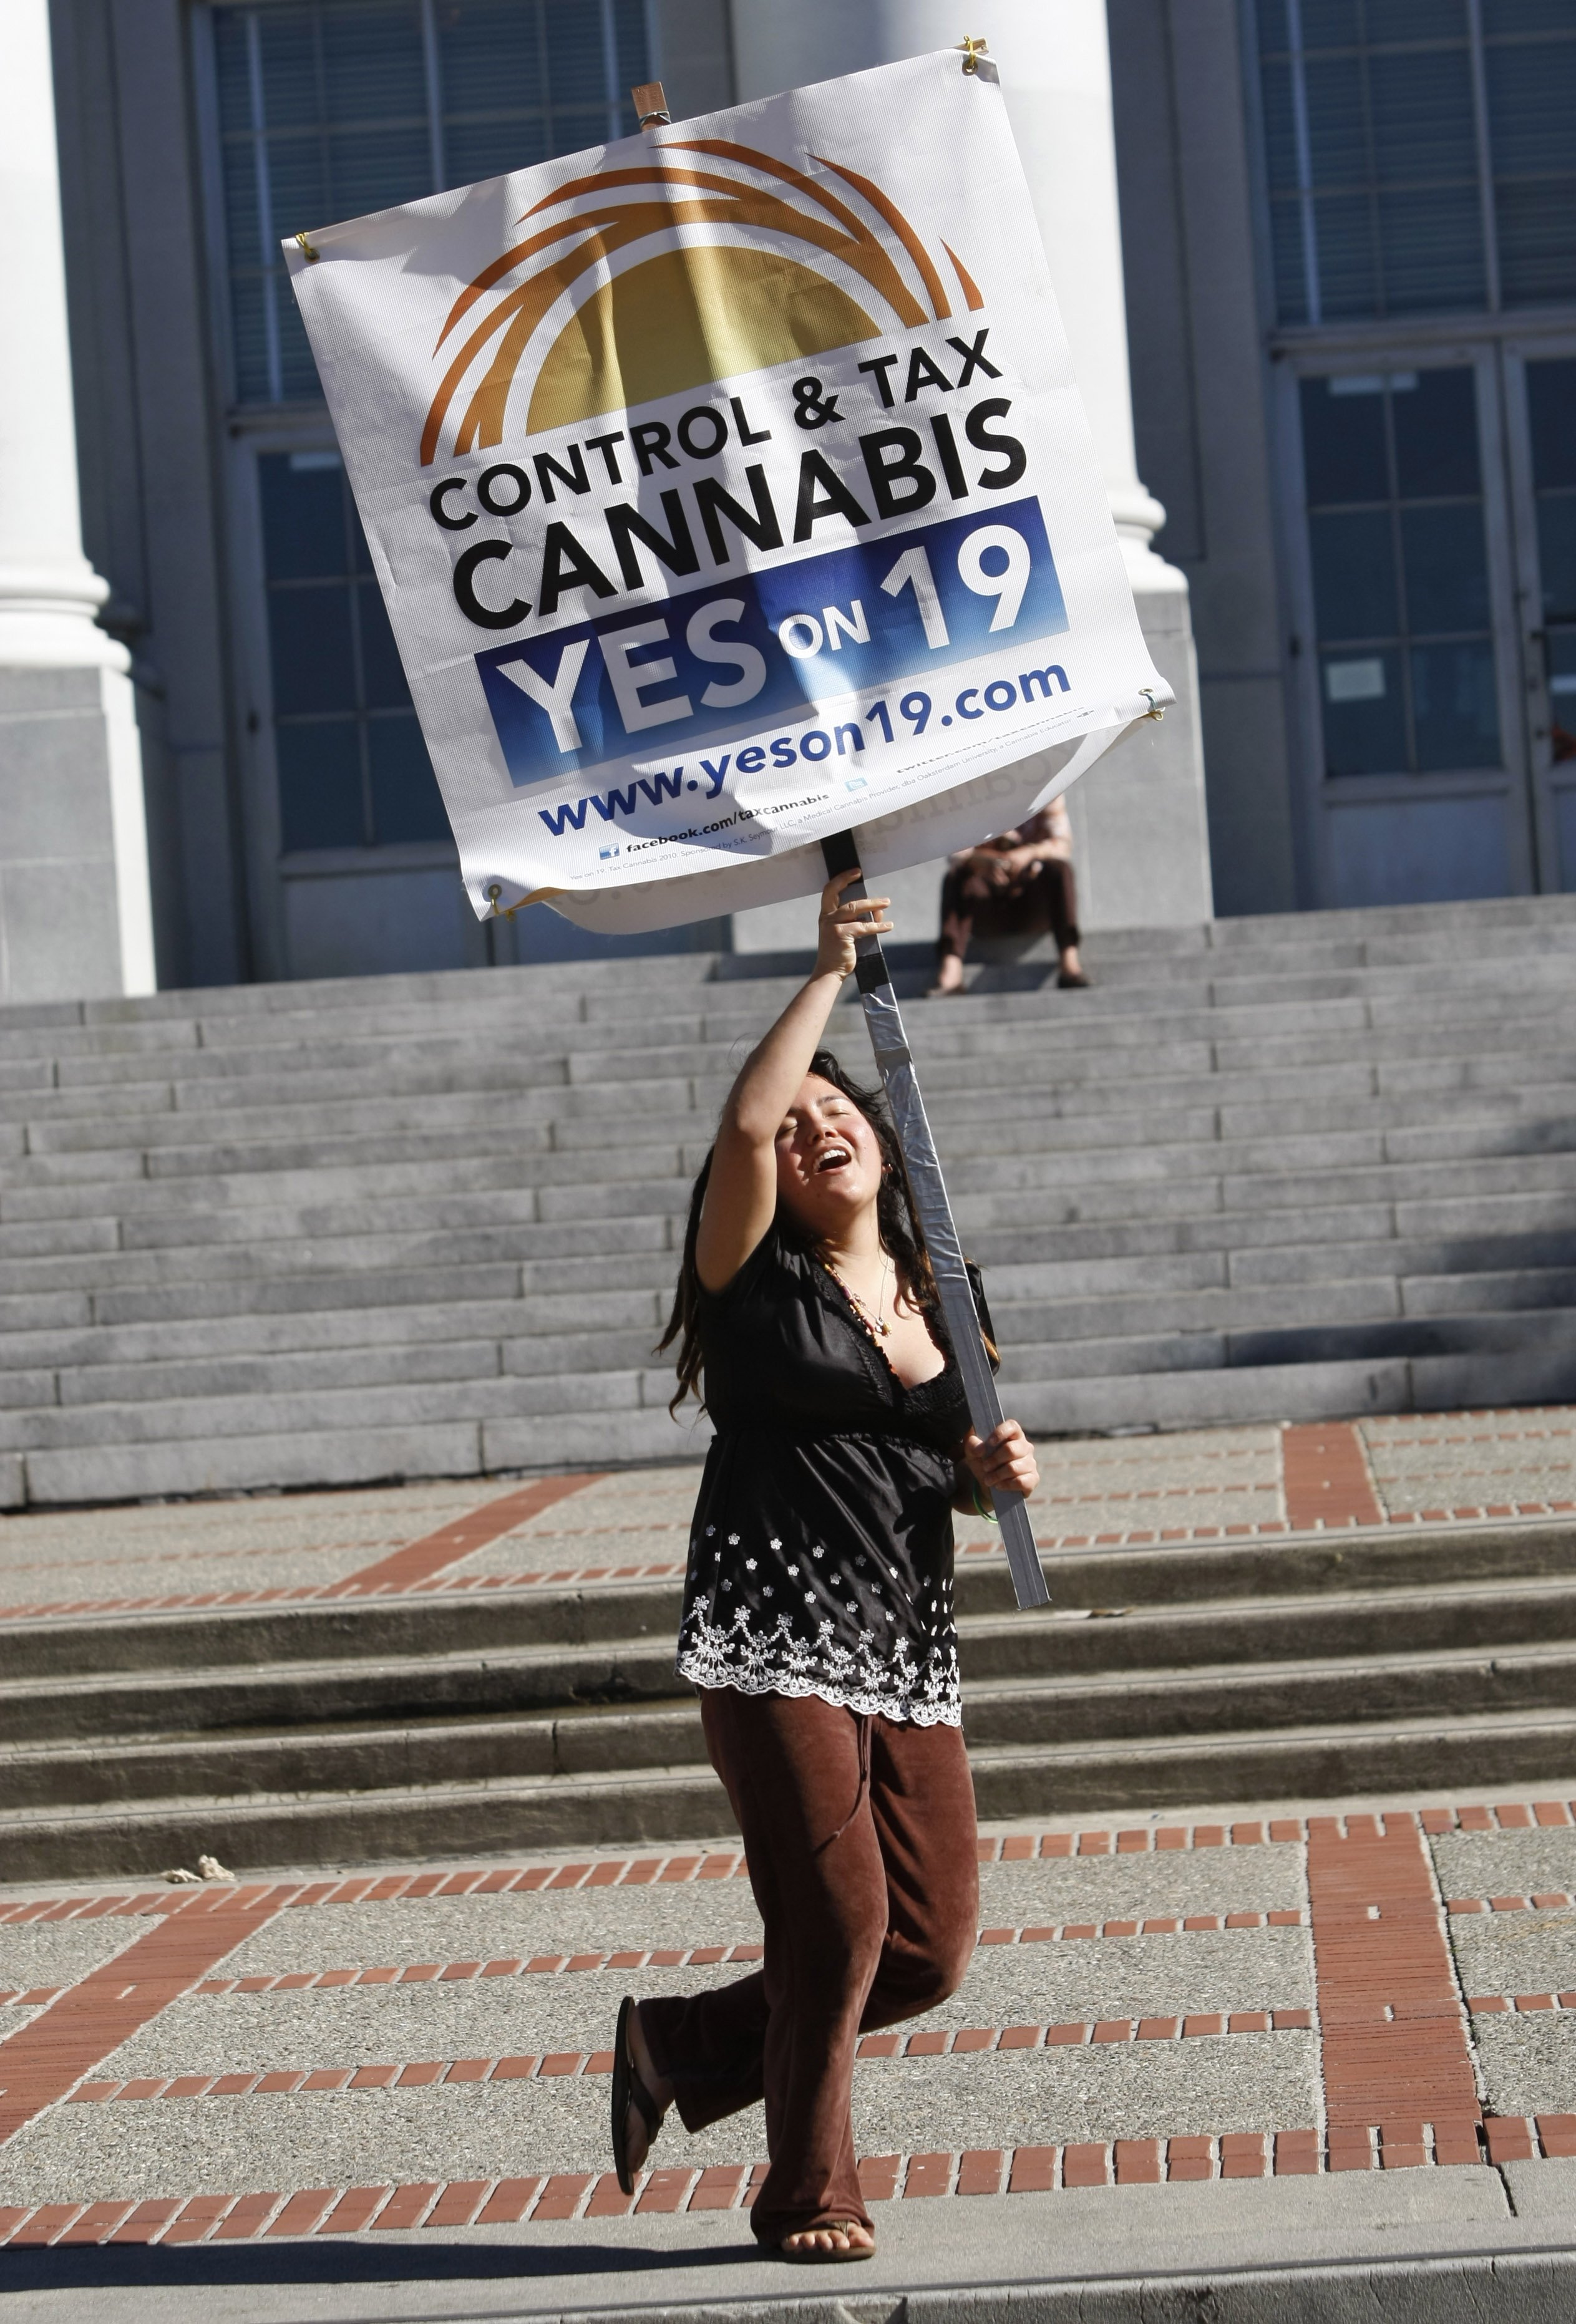 Proposition 19, förslaget som skulle legalisera cannabis förra hösten röstades till de oppositionellas förtvivlan ner.